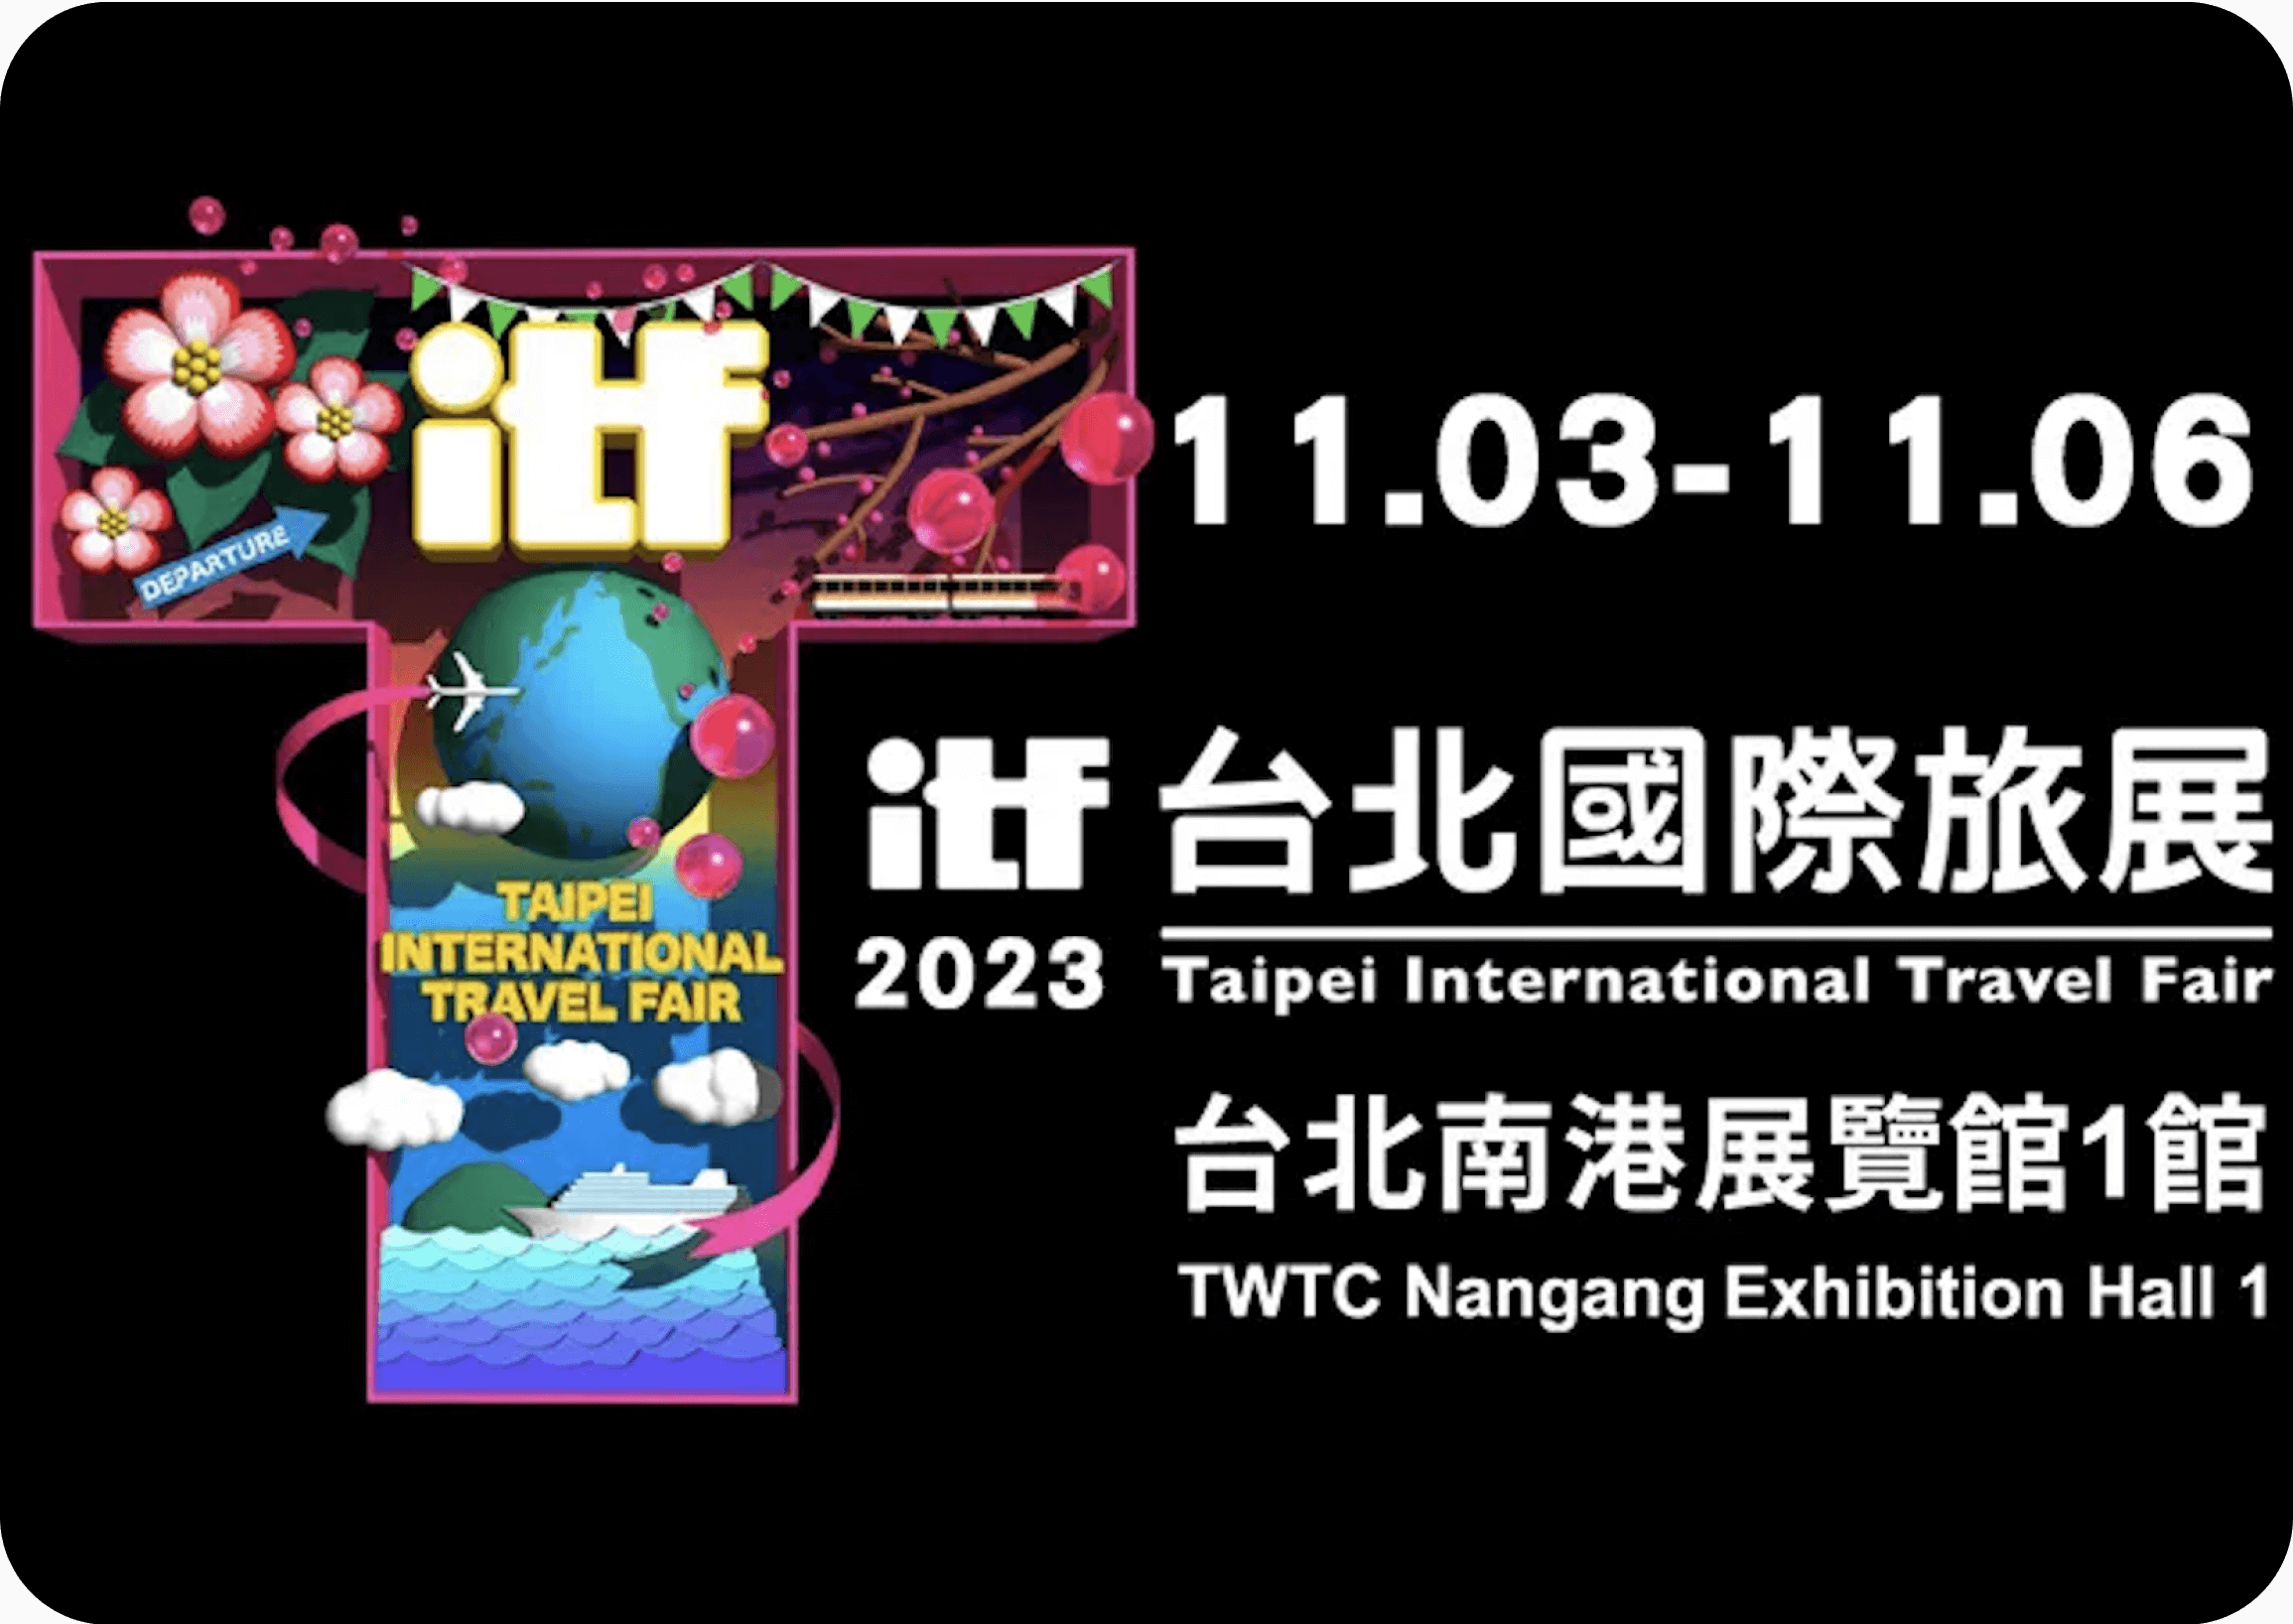 ITF台北國際旅展